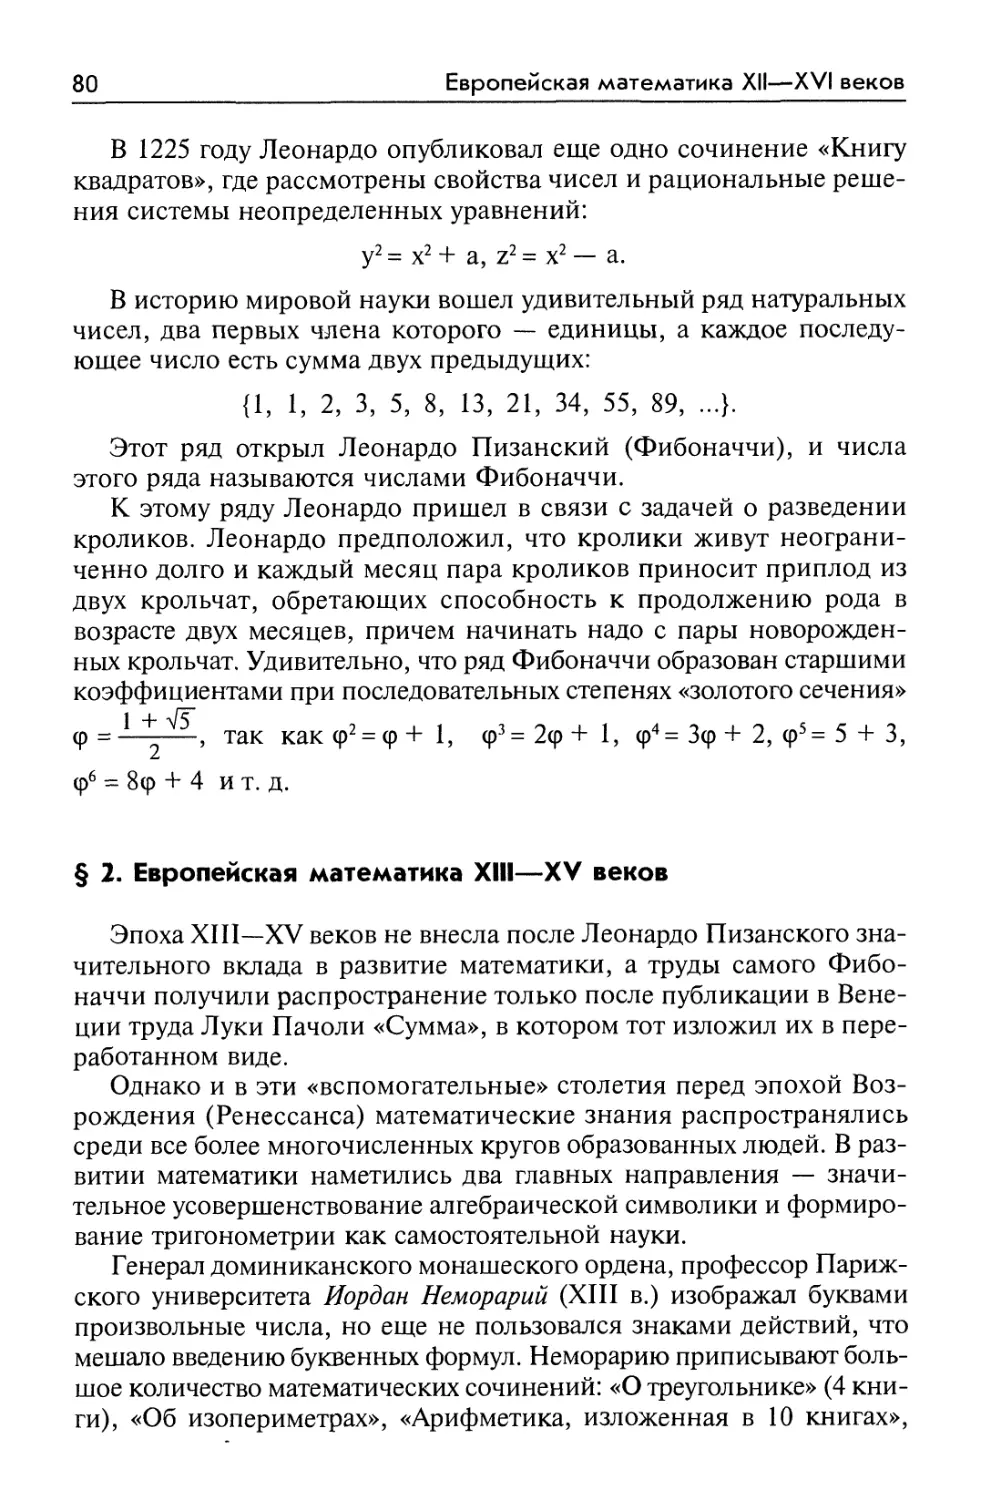 § 2. Европейская математика XIII—XV веков
§ 2. European mathematics of XIII—XV centuries